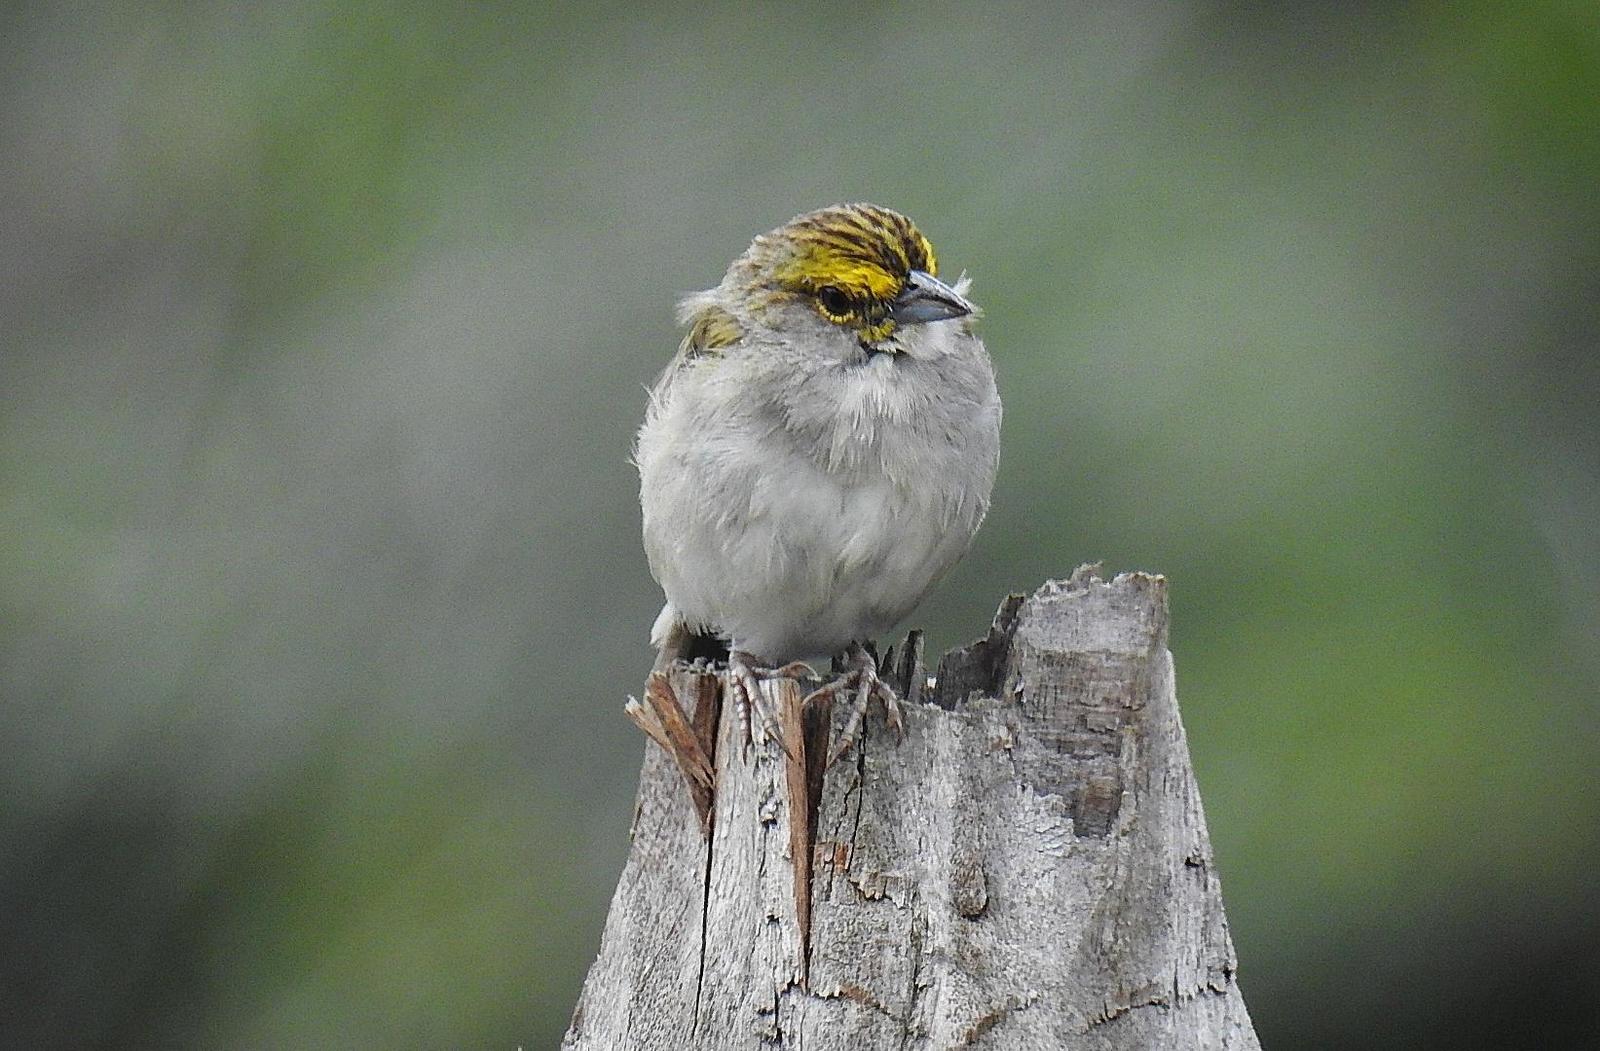 Yellow-browed Sparrow Photo by Julio Delgado